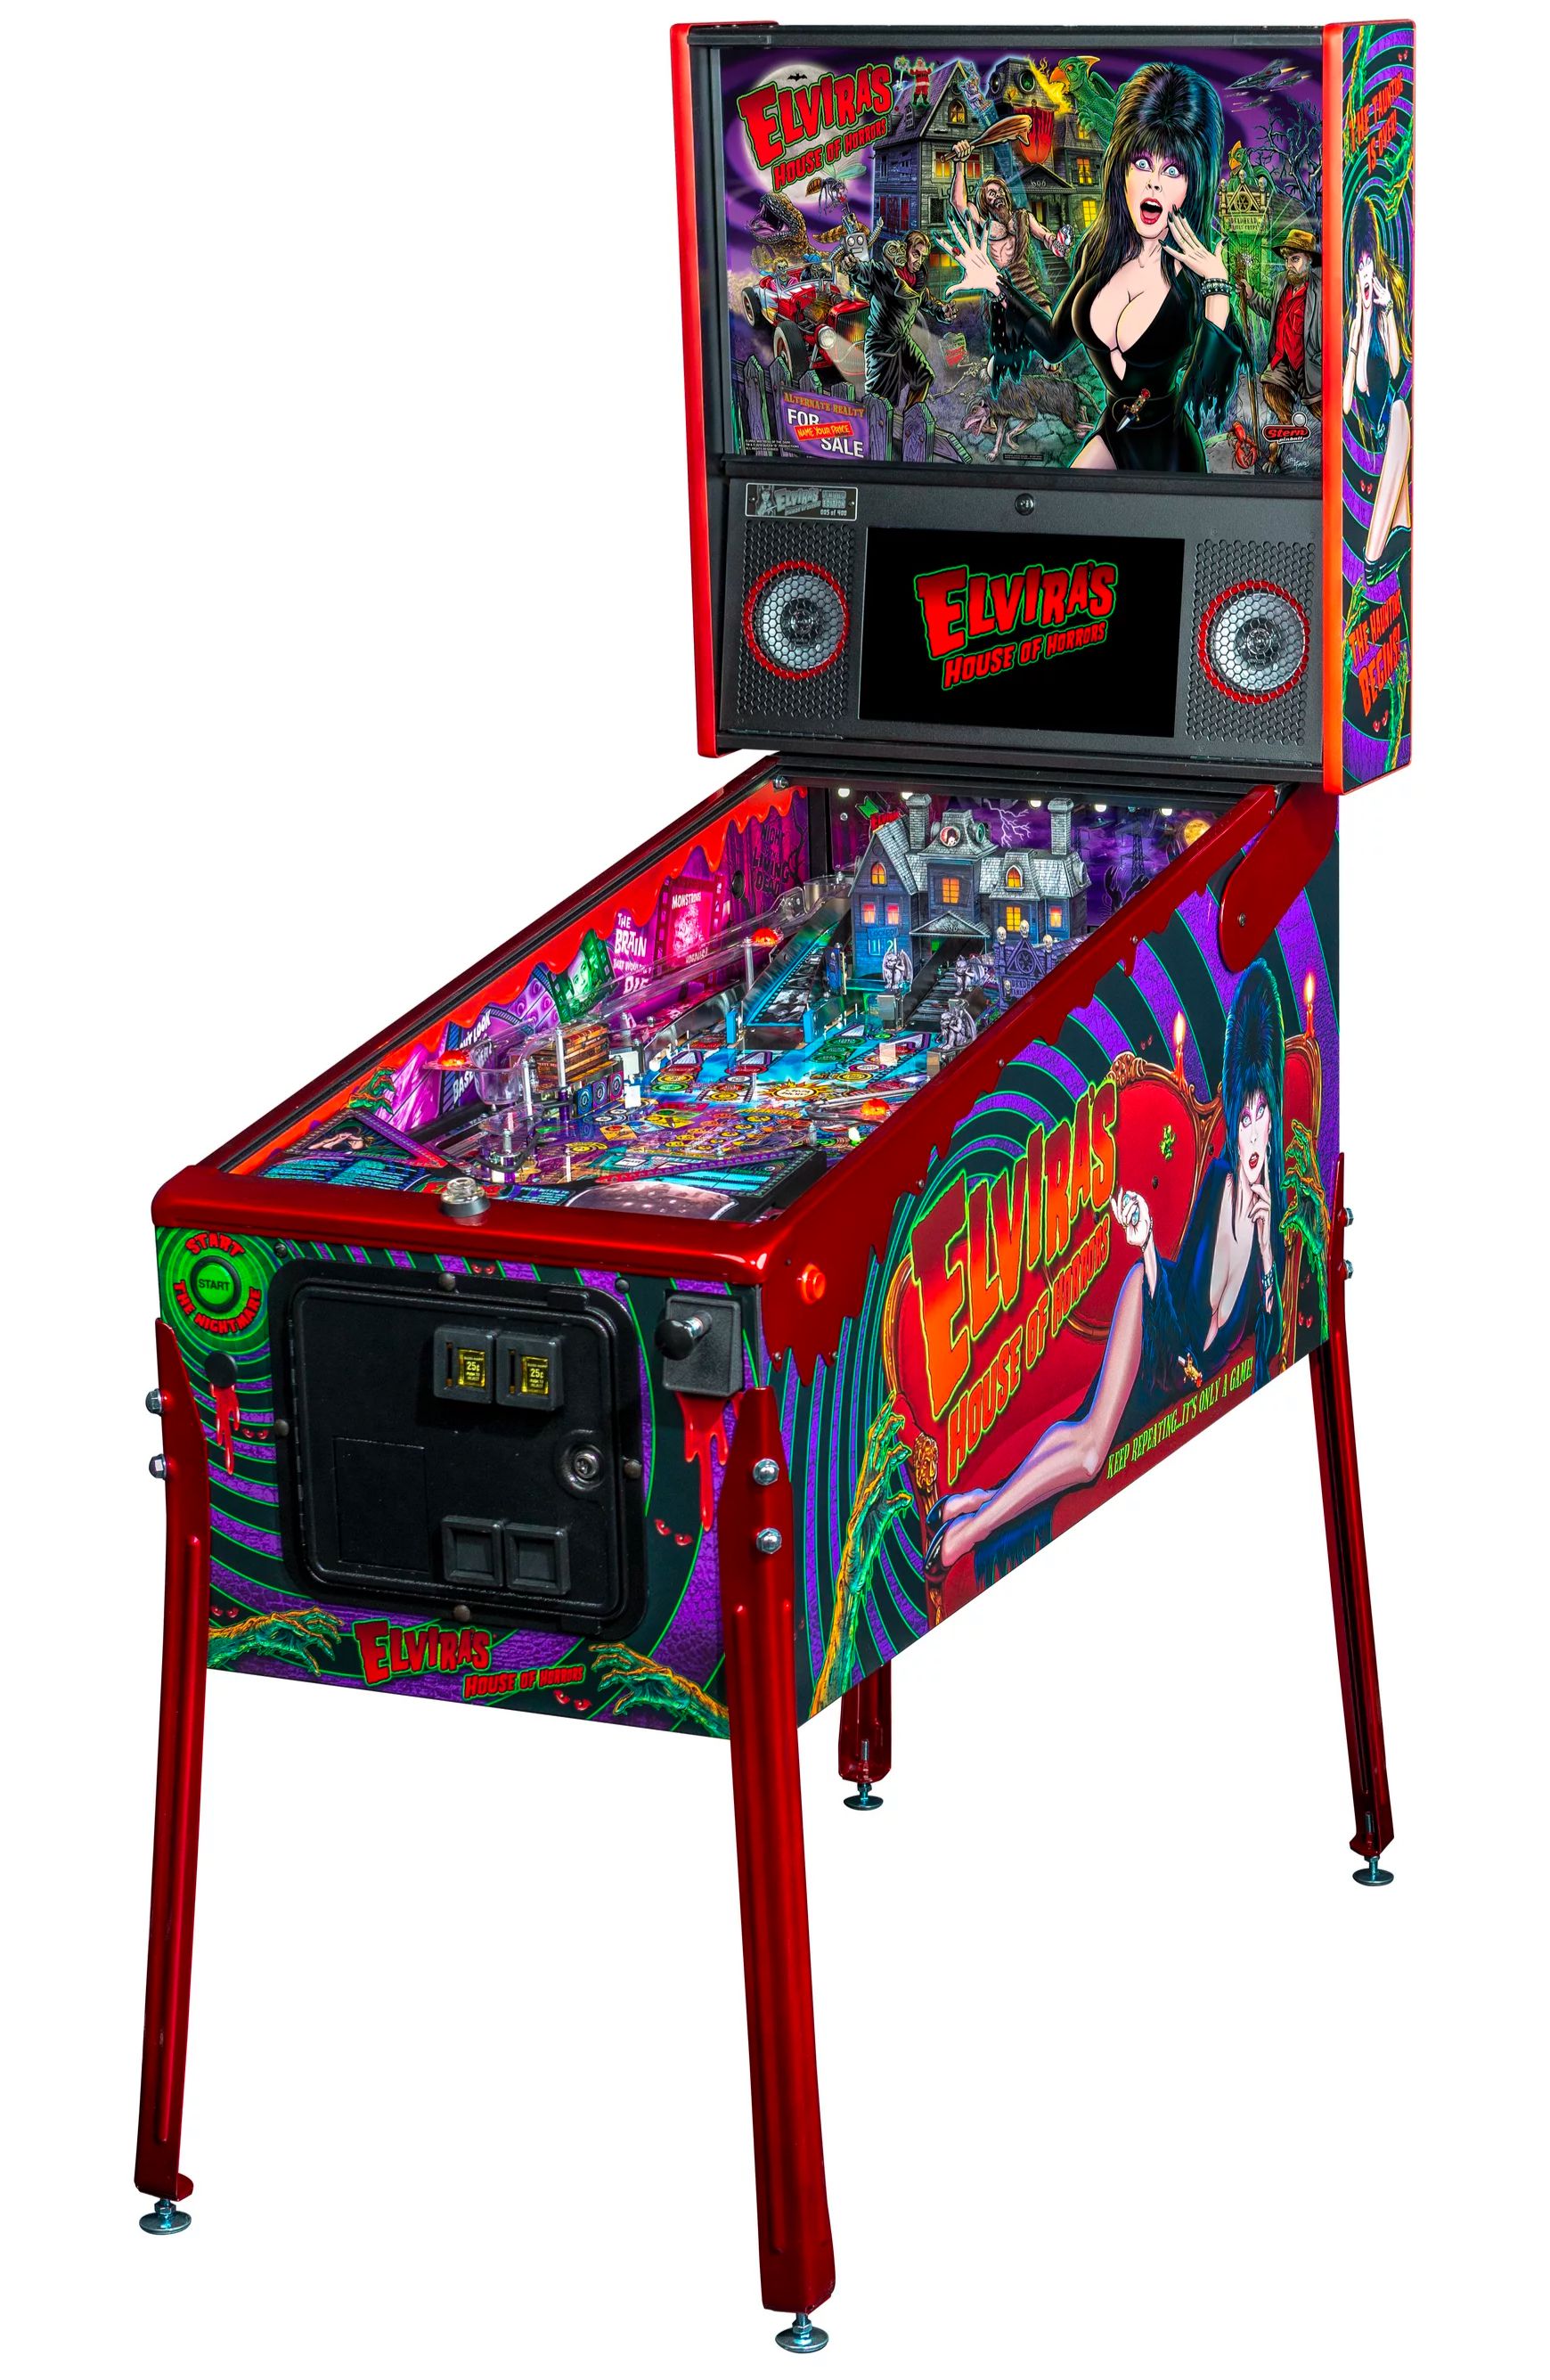 Elvira's House of Horrors Pinball machine by Stern #16